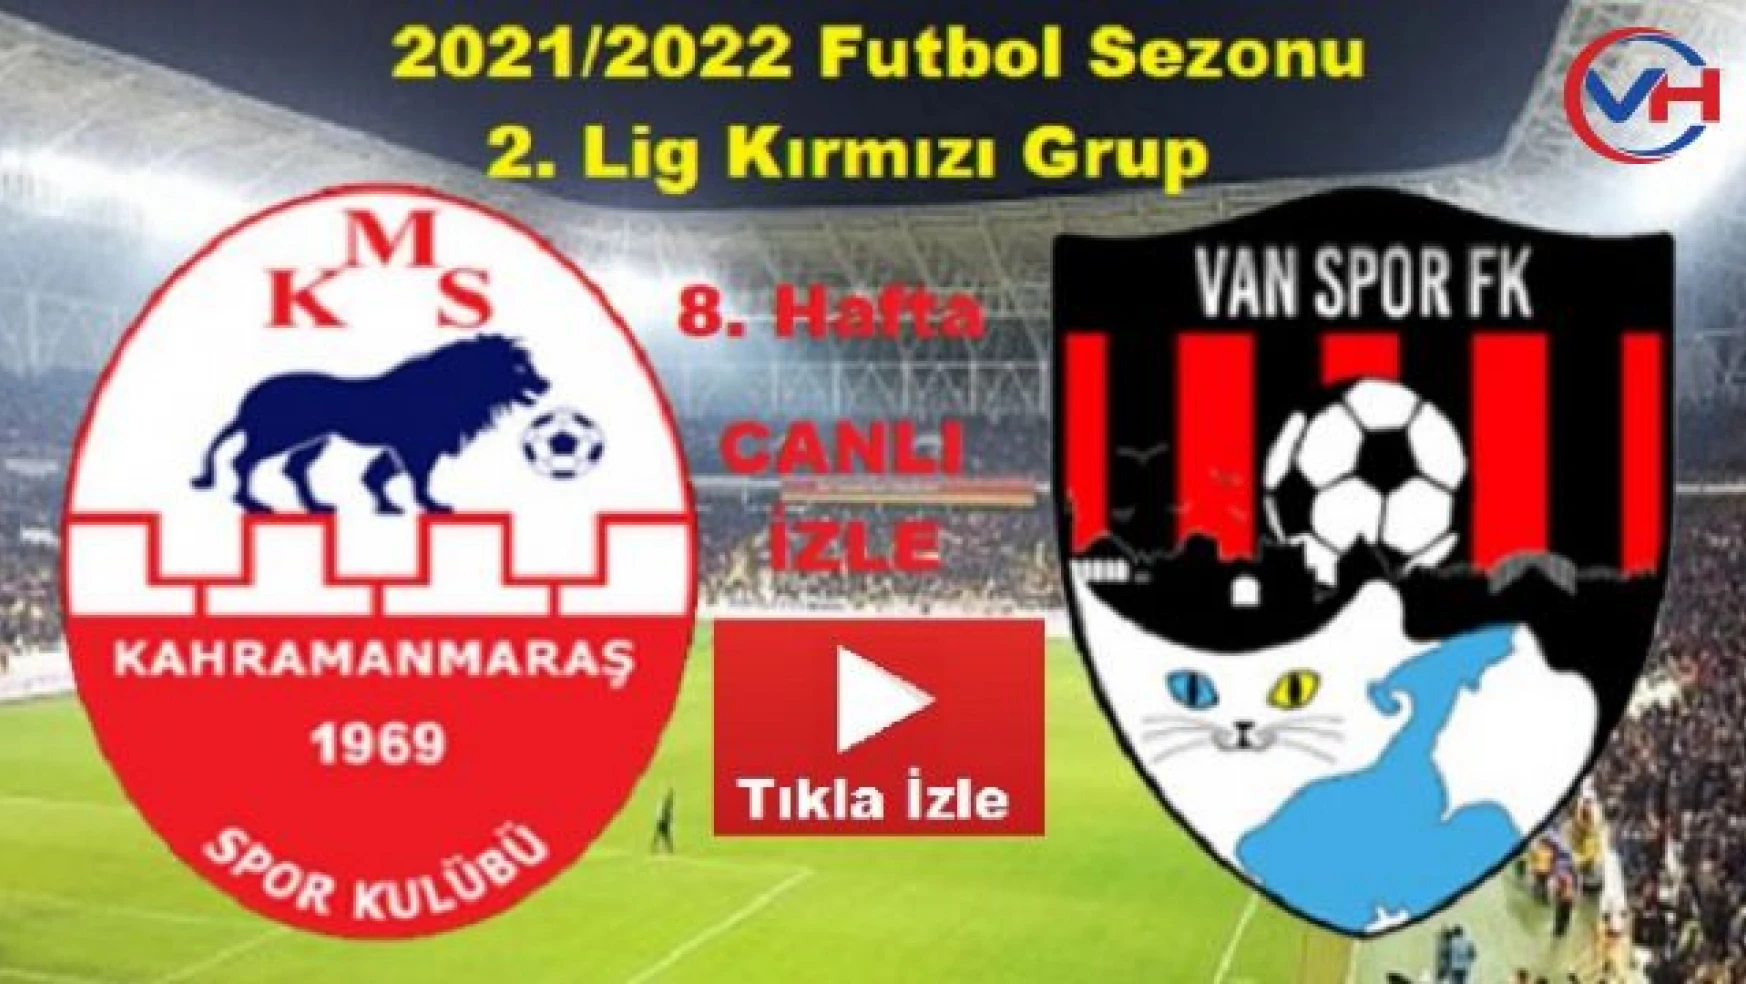 Kahramanmaraşspor 0-3 Vanspor FK maç özeti